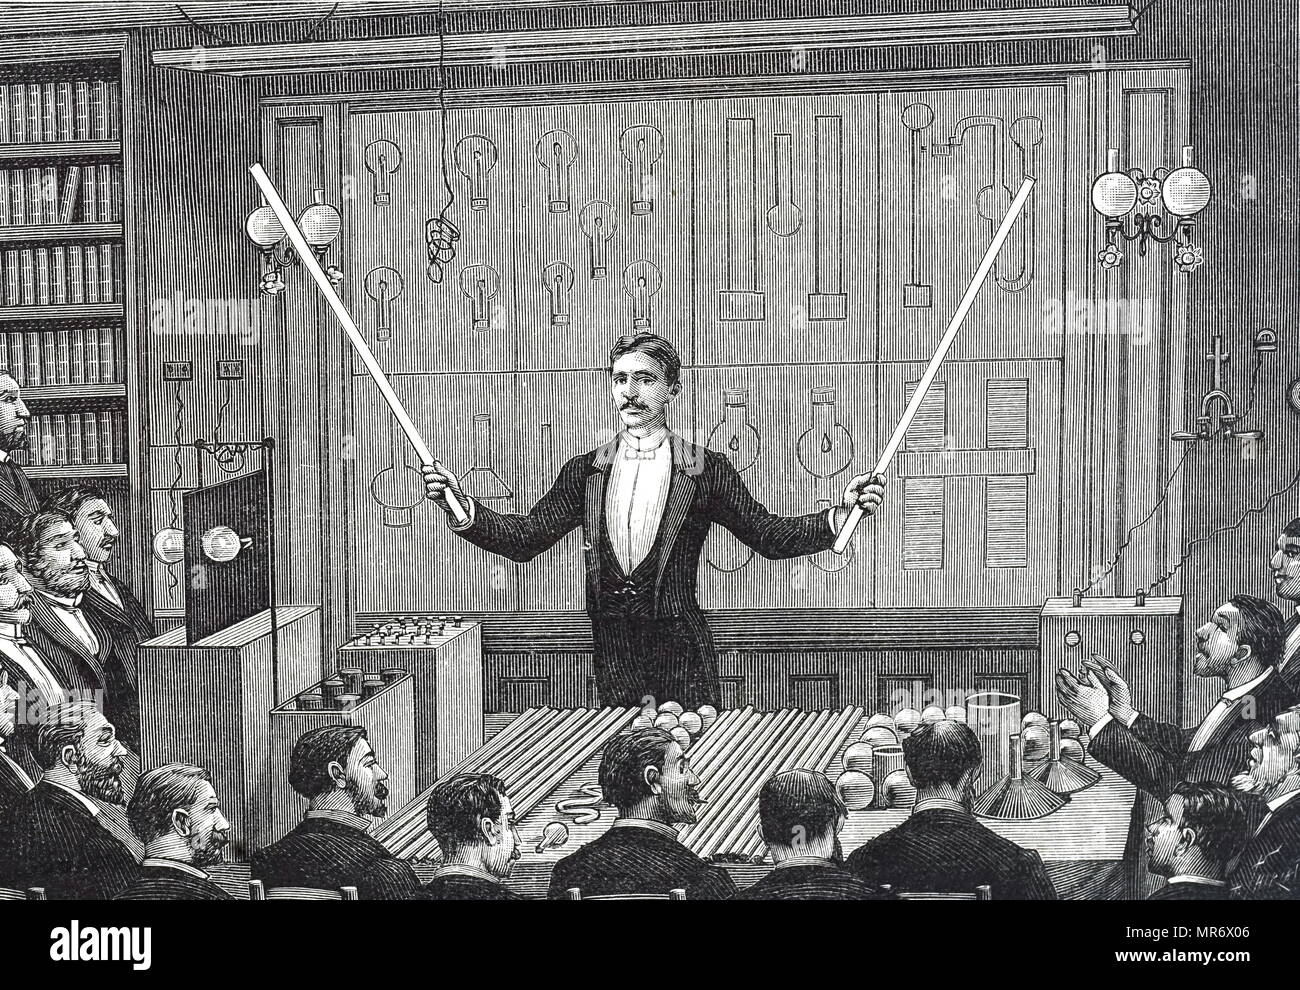 Incisione raffigurante Nikola Tesla affrontando la Société française de Physique e la società internazionale di elettricisti. Egli è la dimostrazione di un elettrodo di scarica meno luminoso con aste di scarico - il precursore di illuminazione fluorescente. Nikola Tesla (1856-1943) un inventore Serbian-American, ingegnere elettrico, ingegnere meccanico, fisico e futurista. Datata del XIX secolo Foto Stock